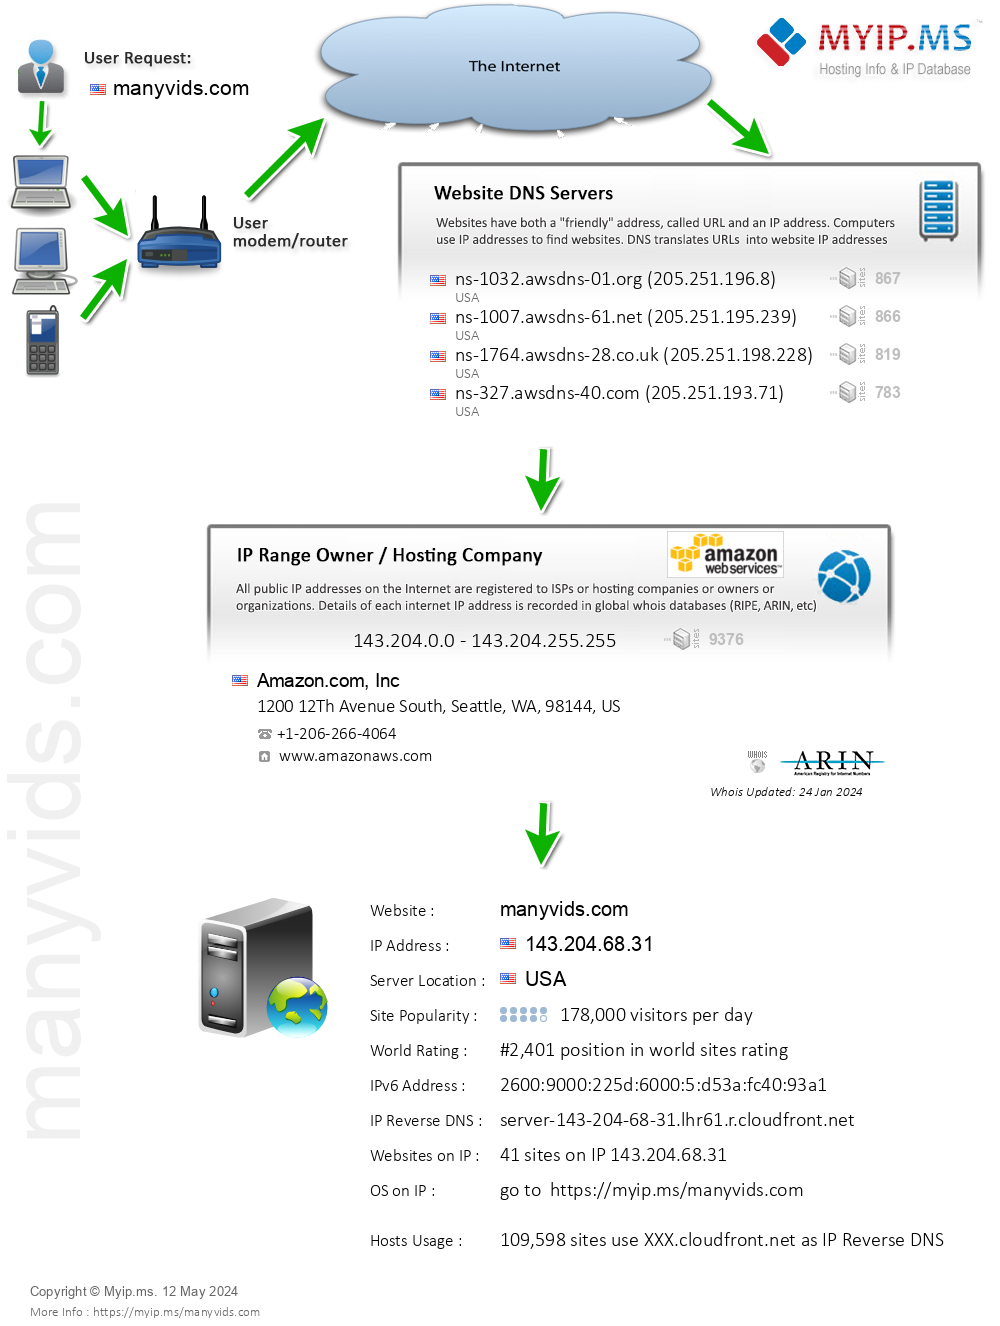 Manyvids.com - Website Hosting Visual IP Diagram